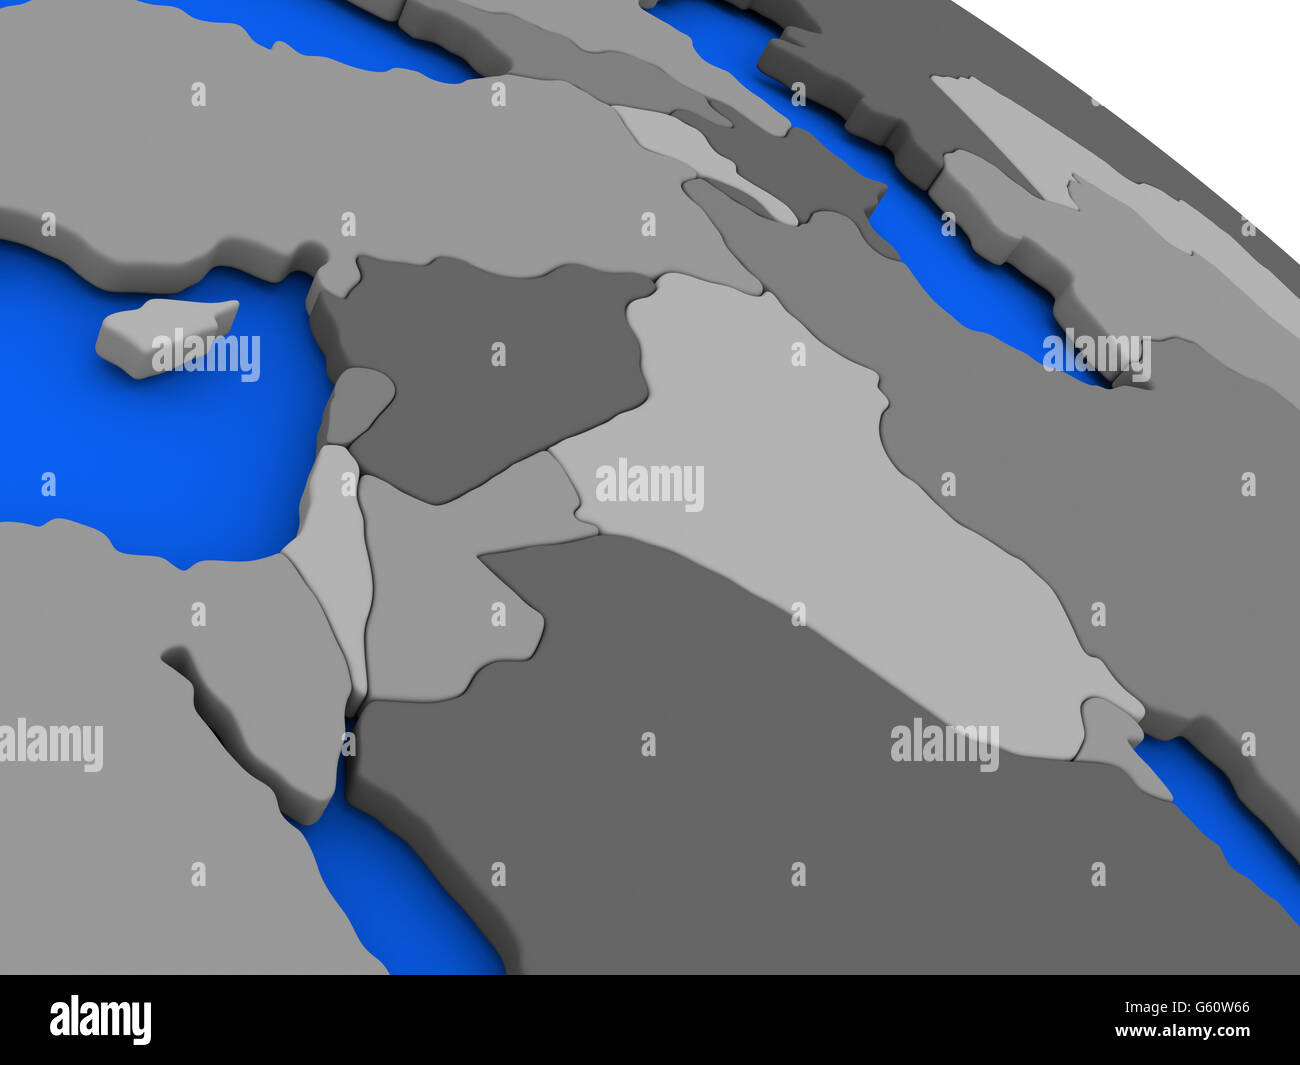 Landkarte von Israel, Libanon, Jordanien, Syrien und Irak Region am 3D-Modell der Erde mit Ländern in verschiedenen Schattierungen von grau und blau oce Stockfoto